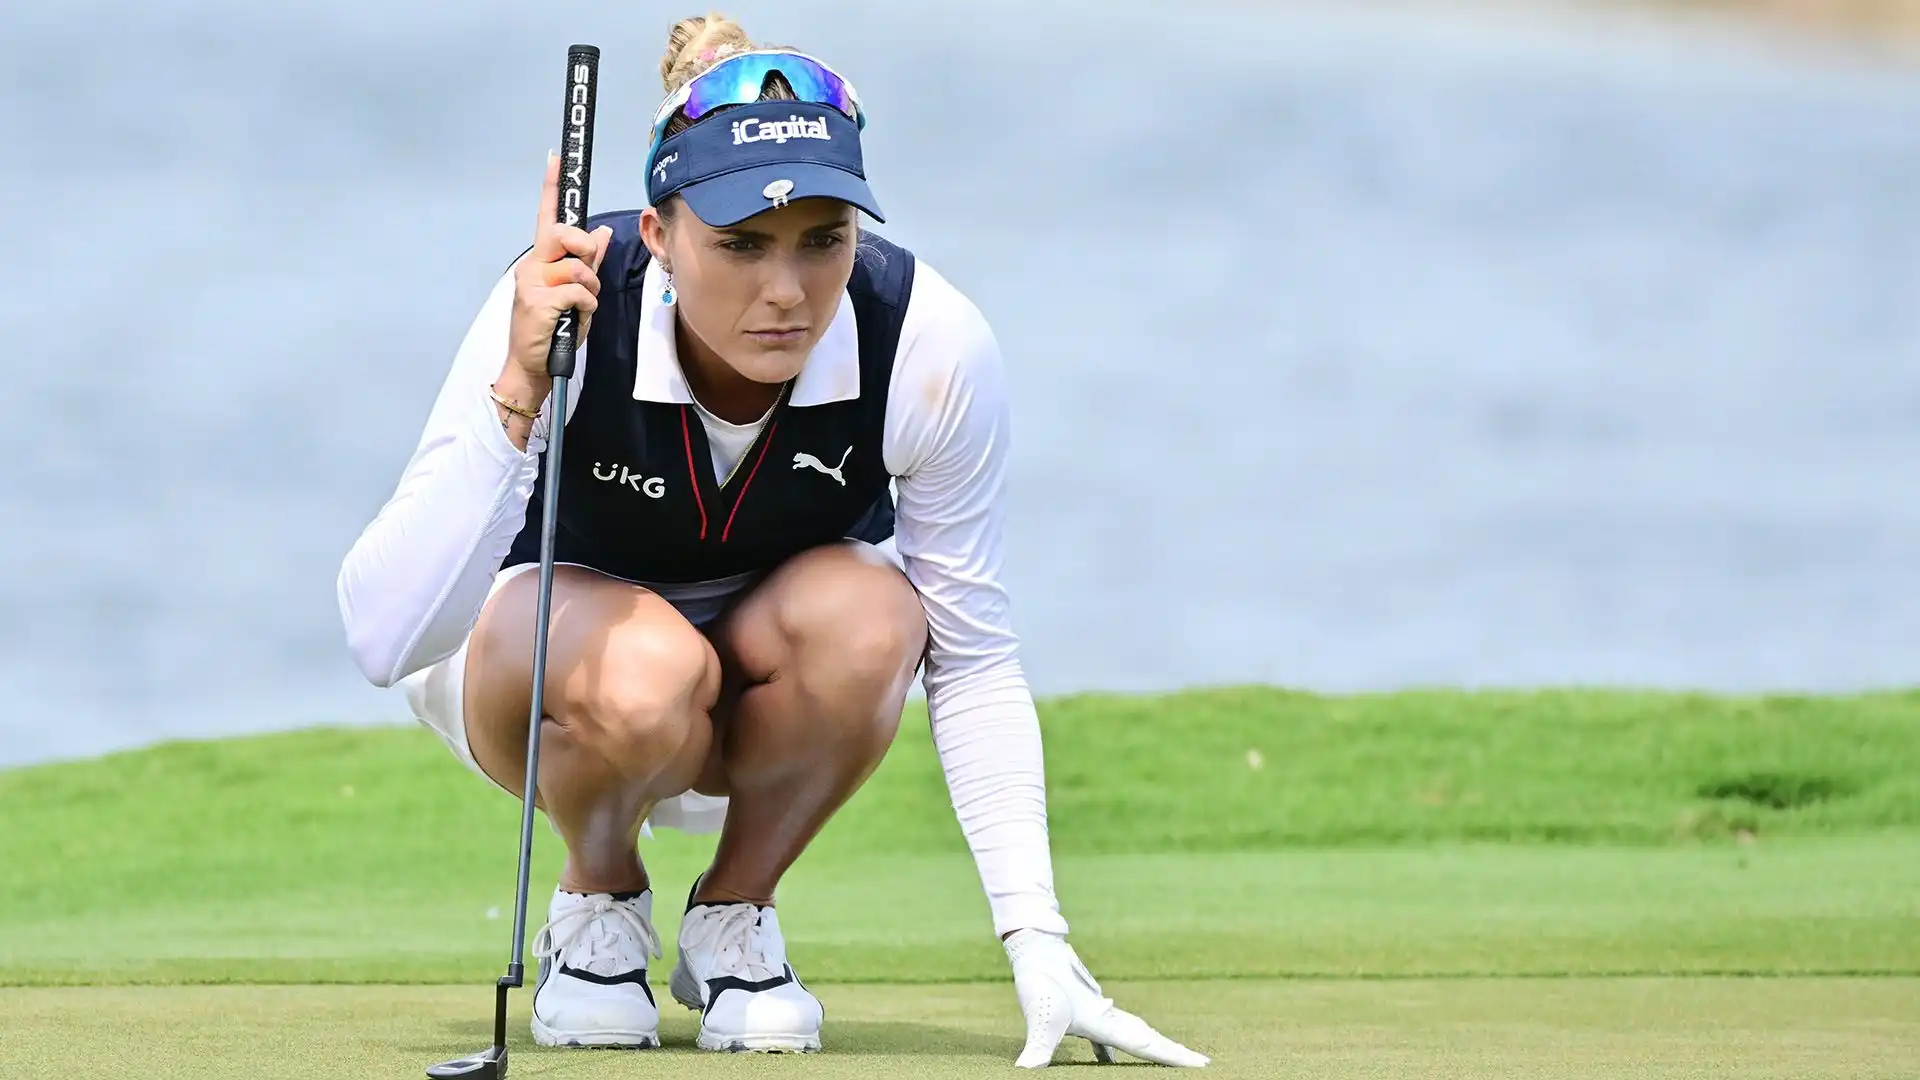 Lexi Thompson, precocissimo talento del golf, ha citato la salute mentale come uno dei fattori che l'ha spinta a smettere